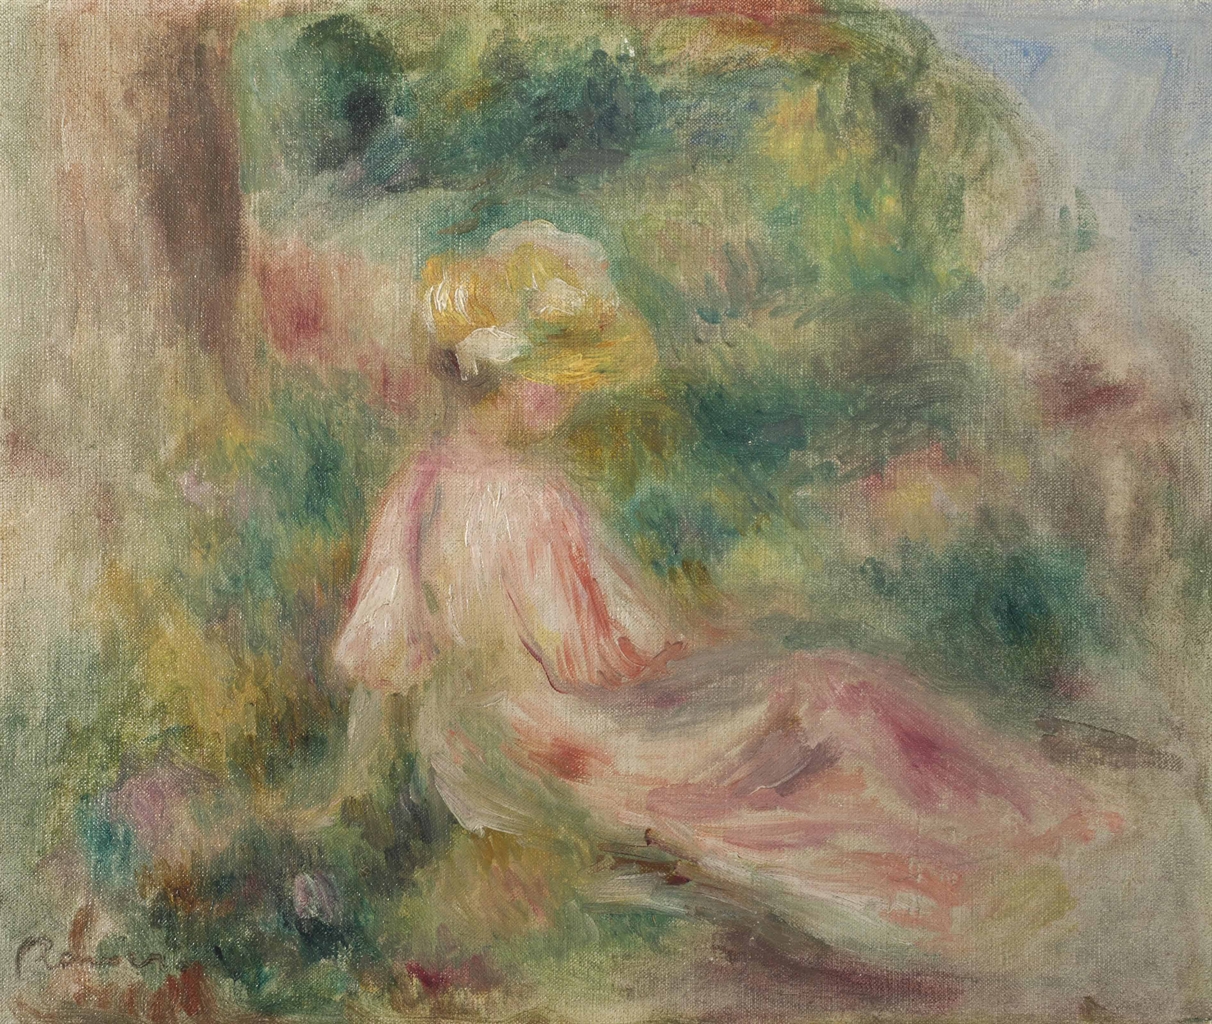 Pierre+Auguste+Renoir-1841-1-19 (511).jpg